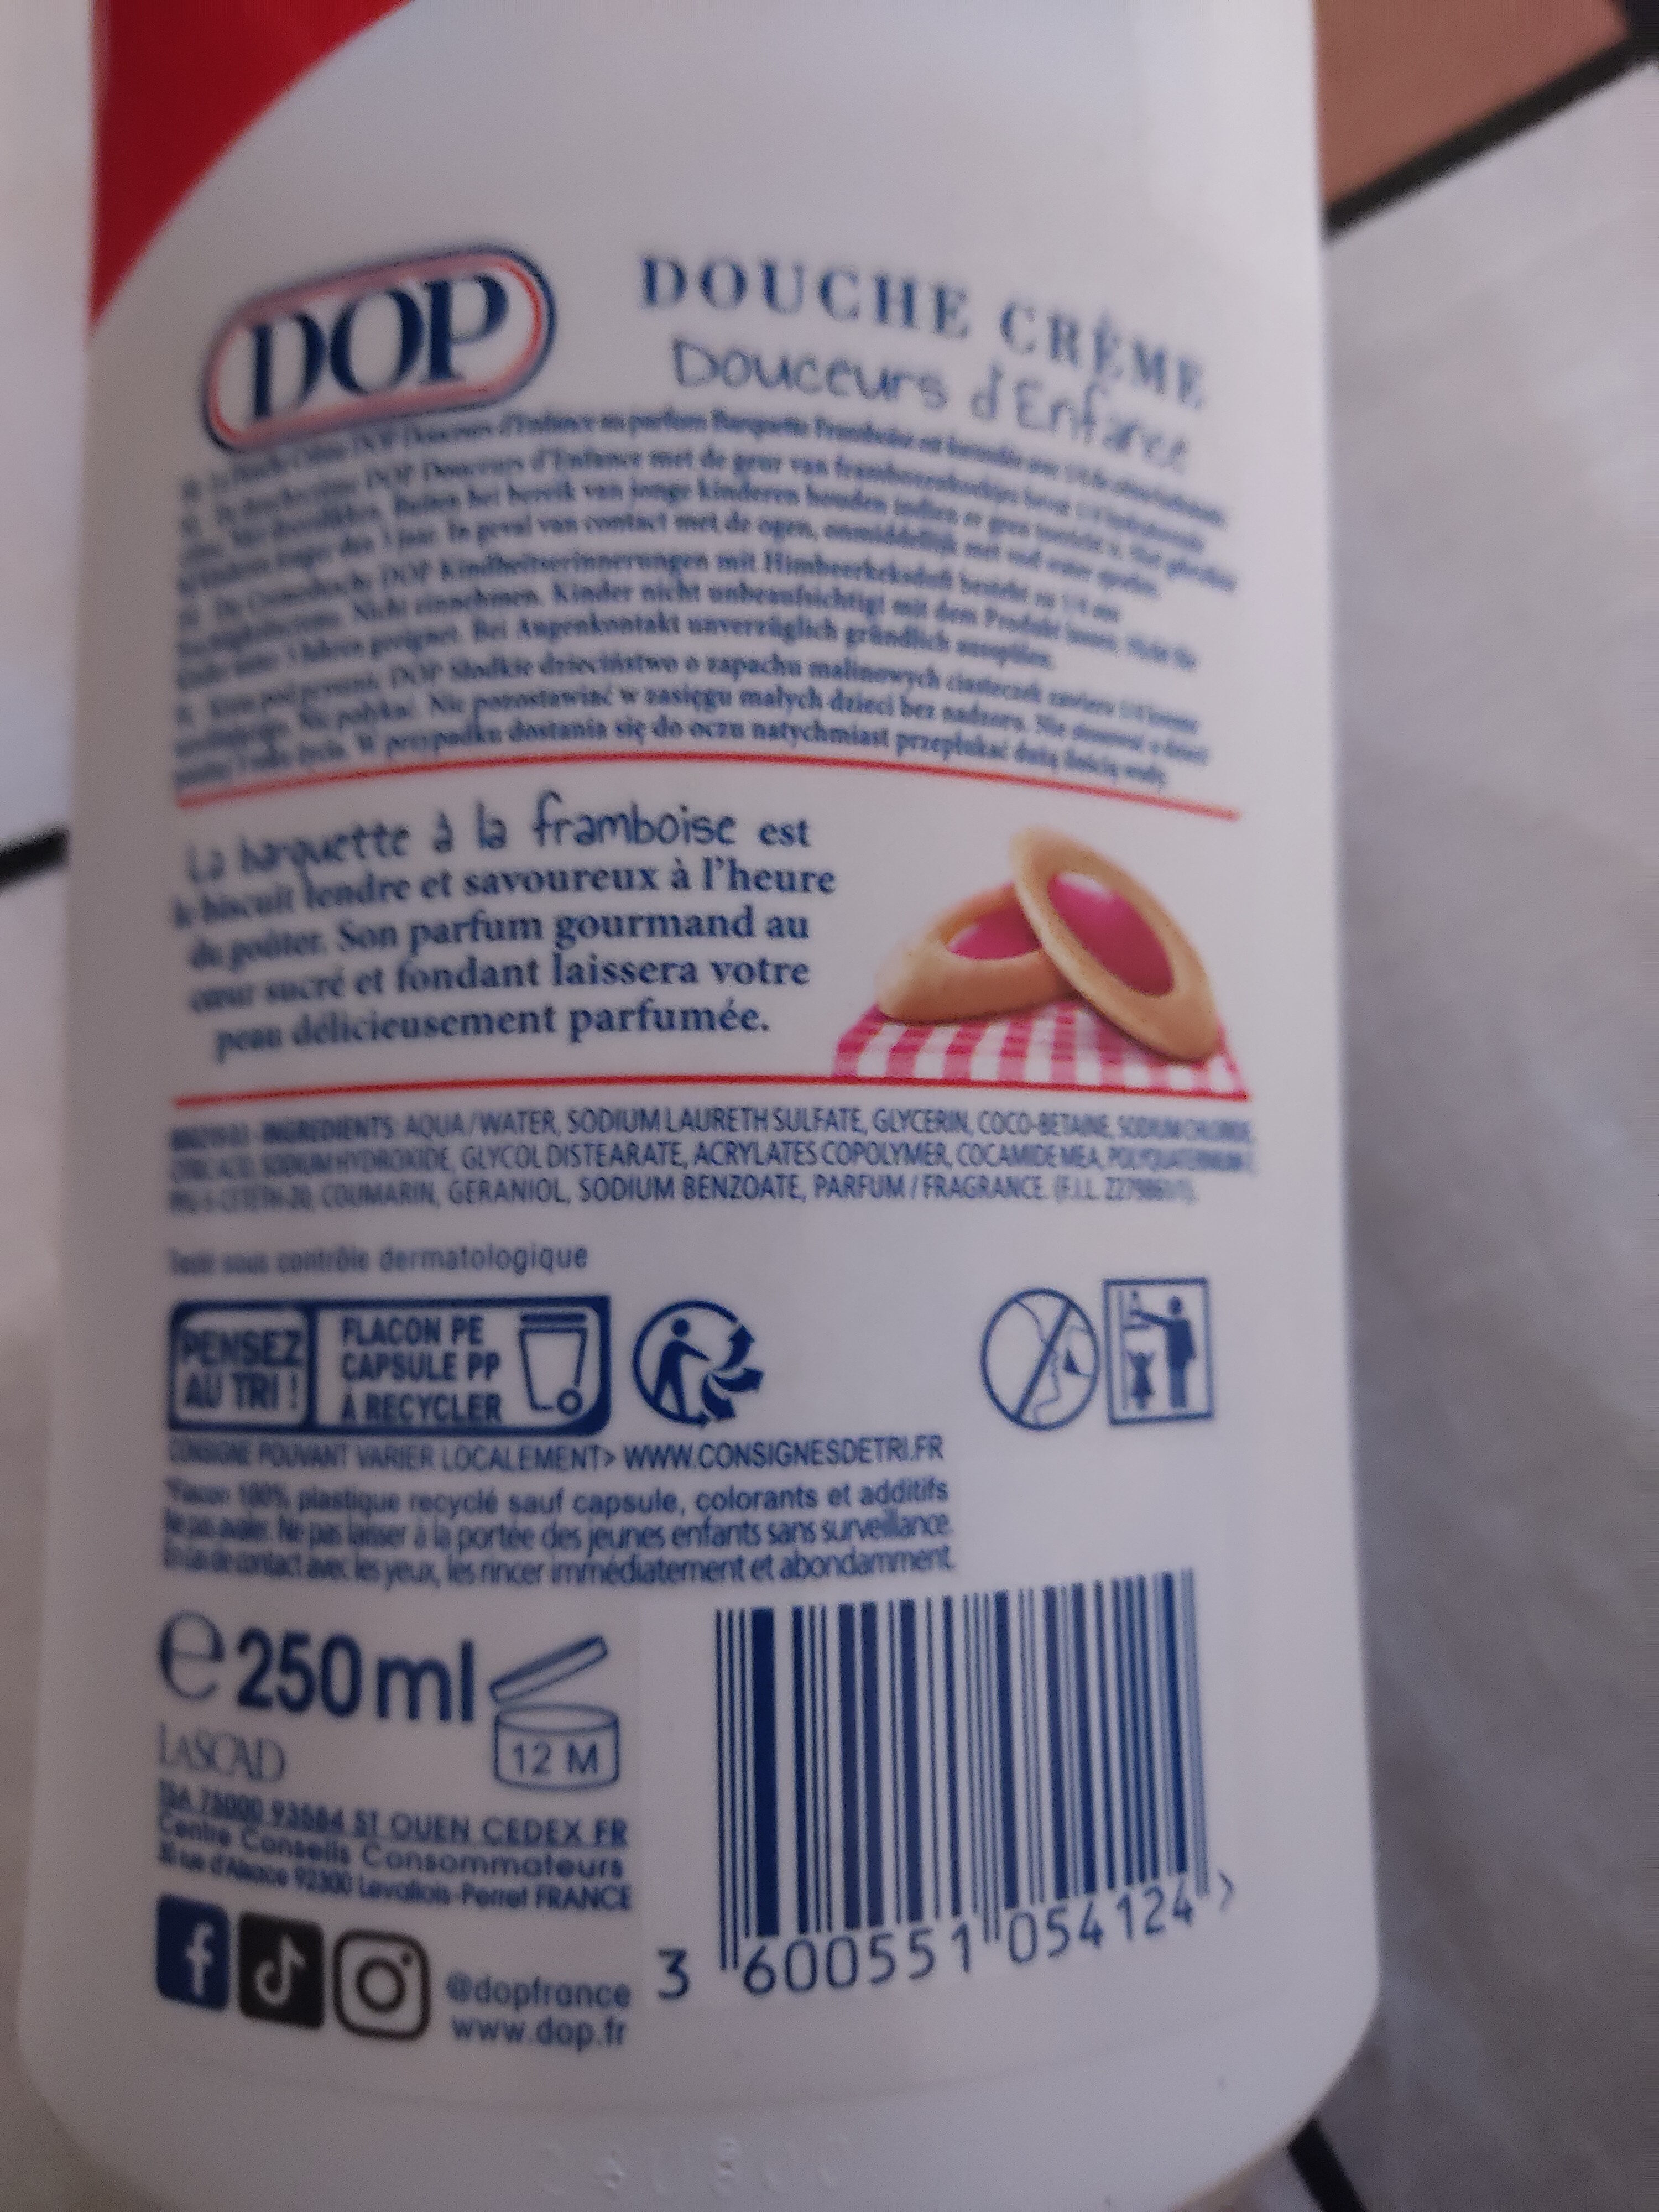 douche crème - Product - fr